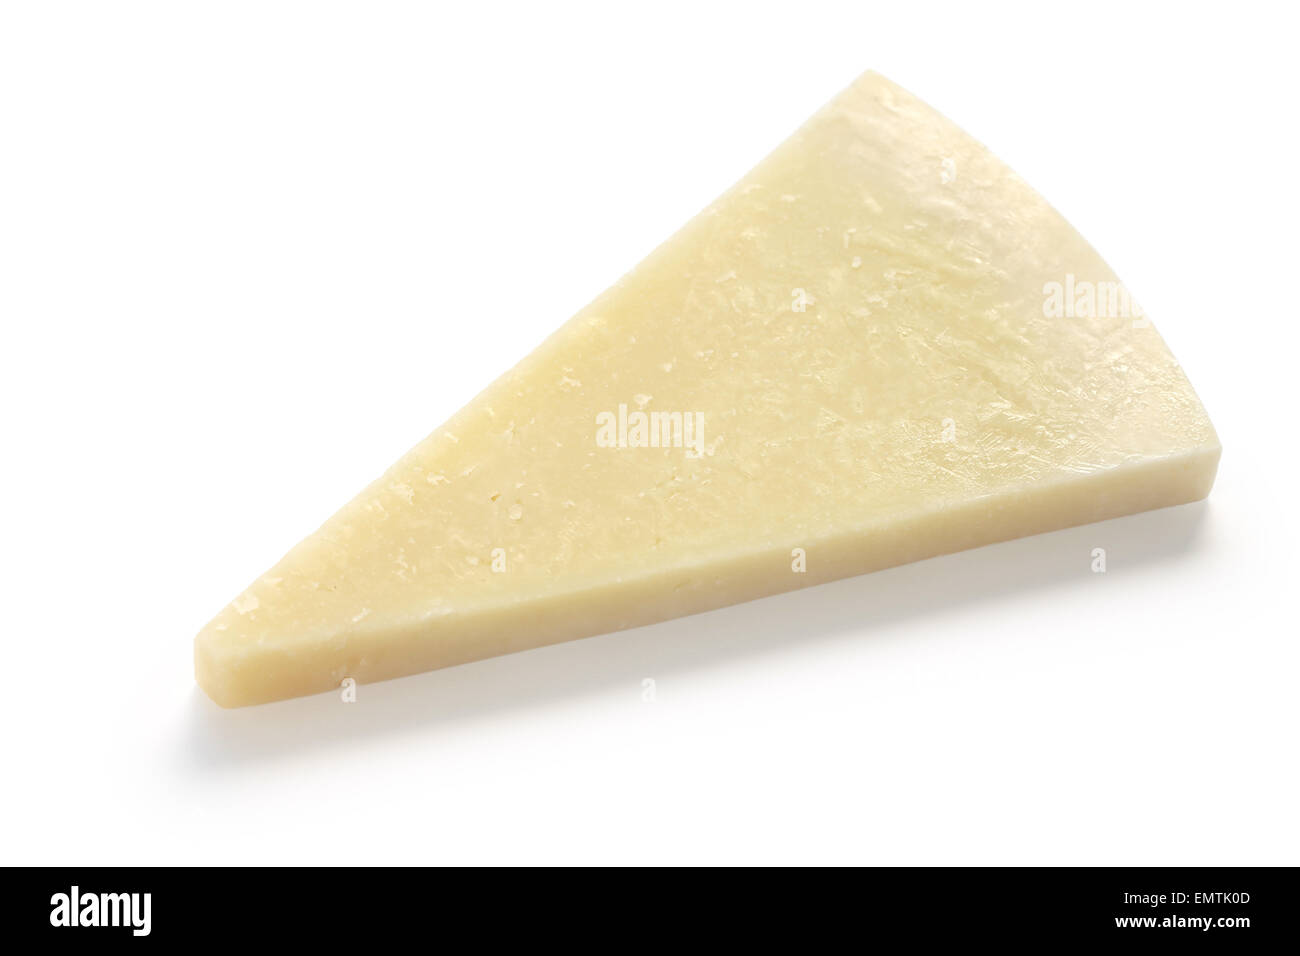 pecorino romano, hard italian sheep milk cheese isolated on white background Stock Photo